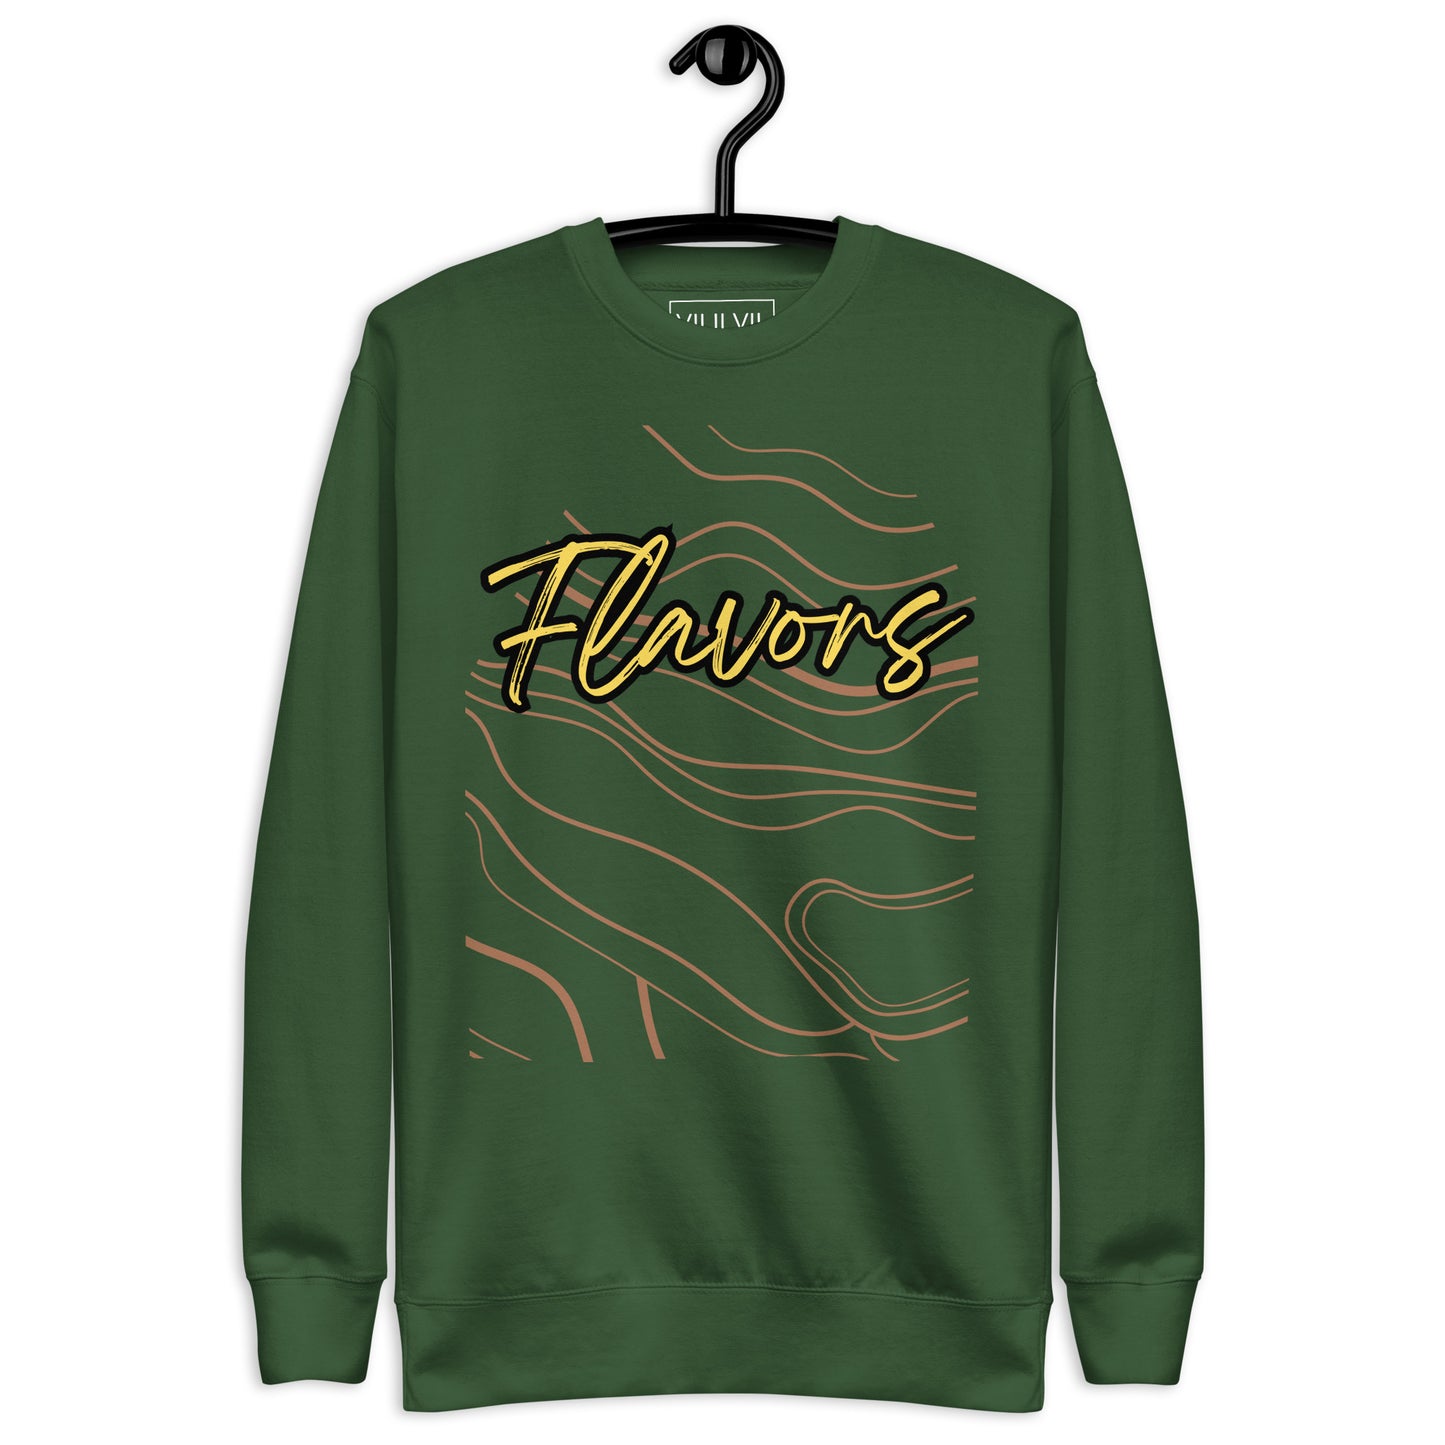 Flavors- Sweatshirt